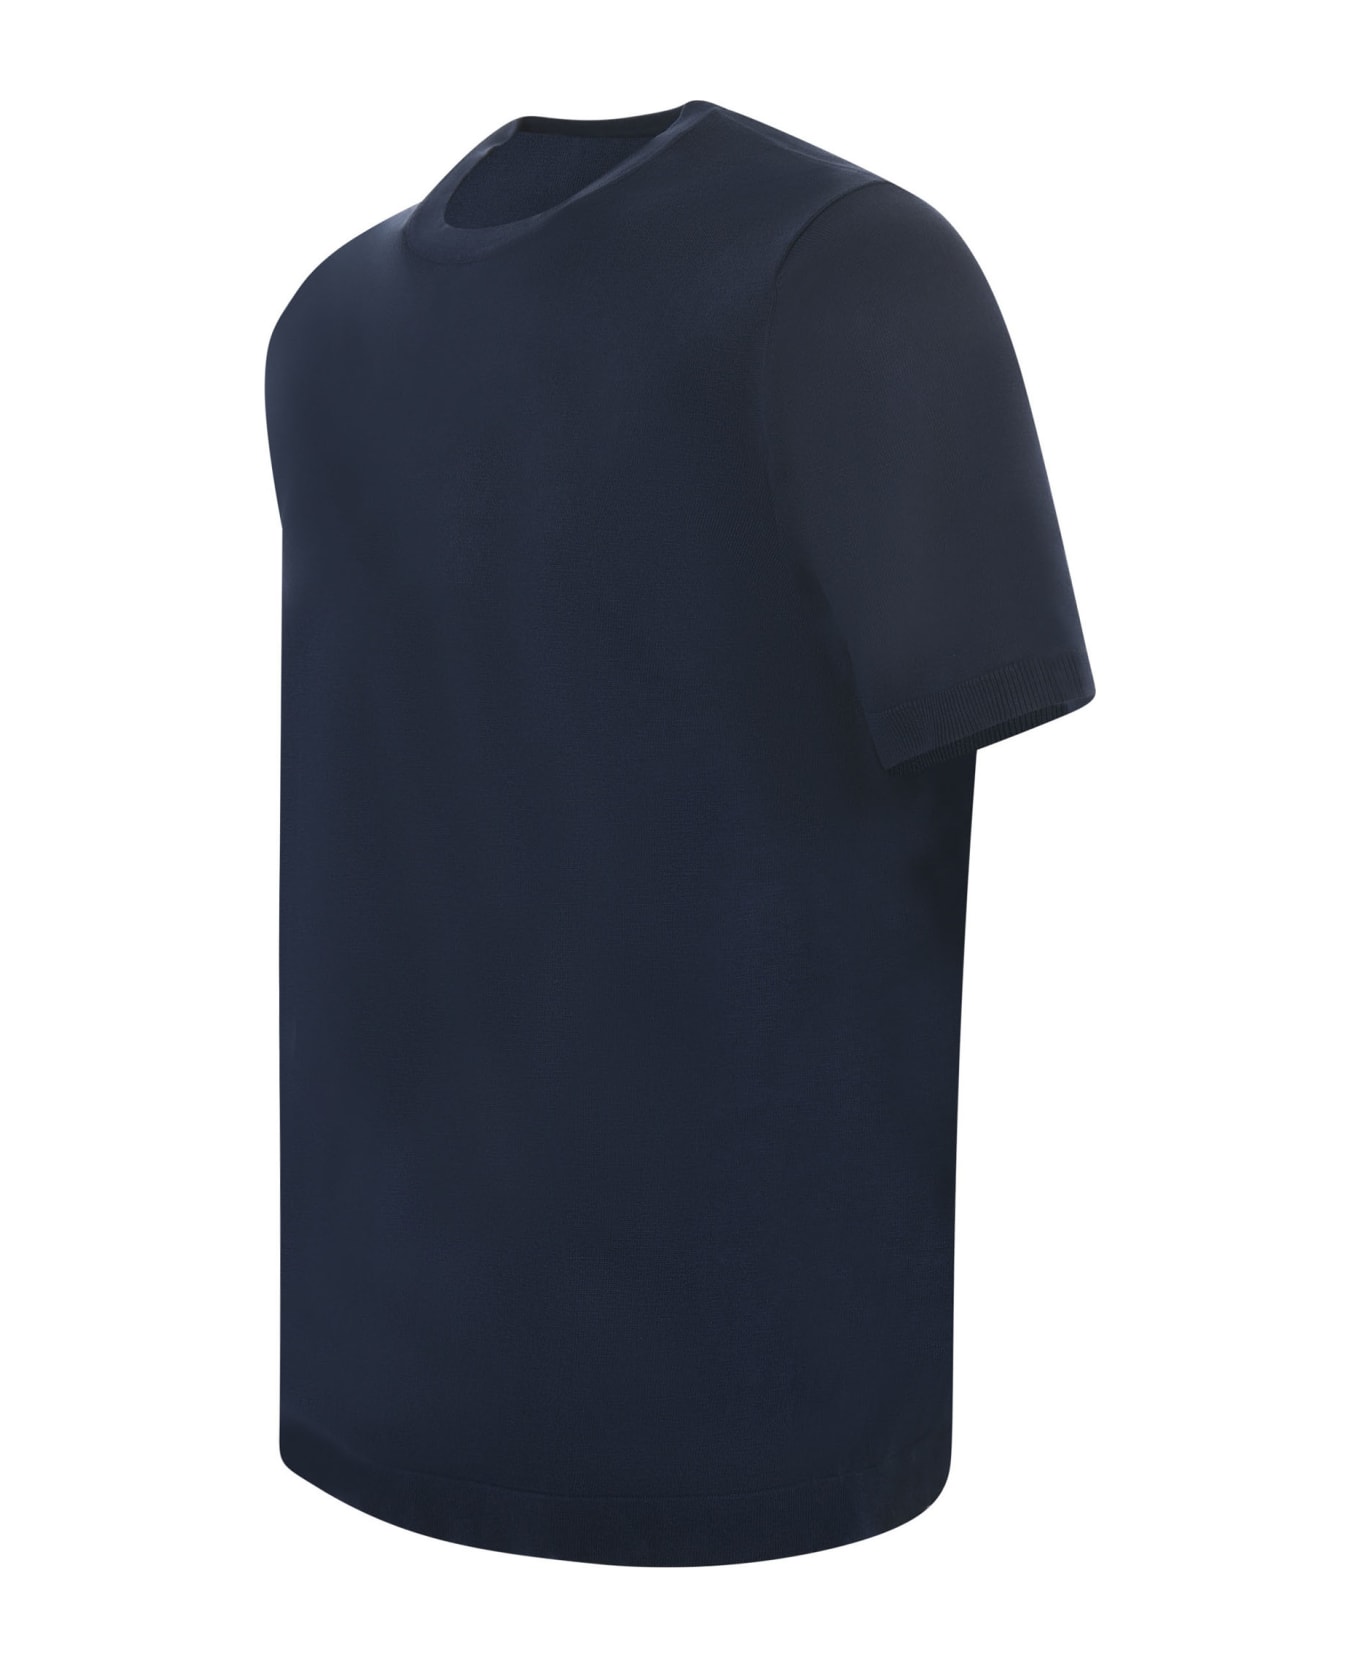 Jeordie's T-shirt - Blu scuro